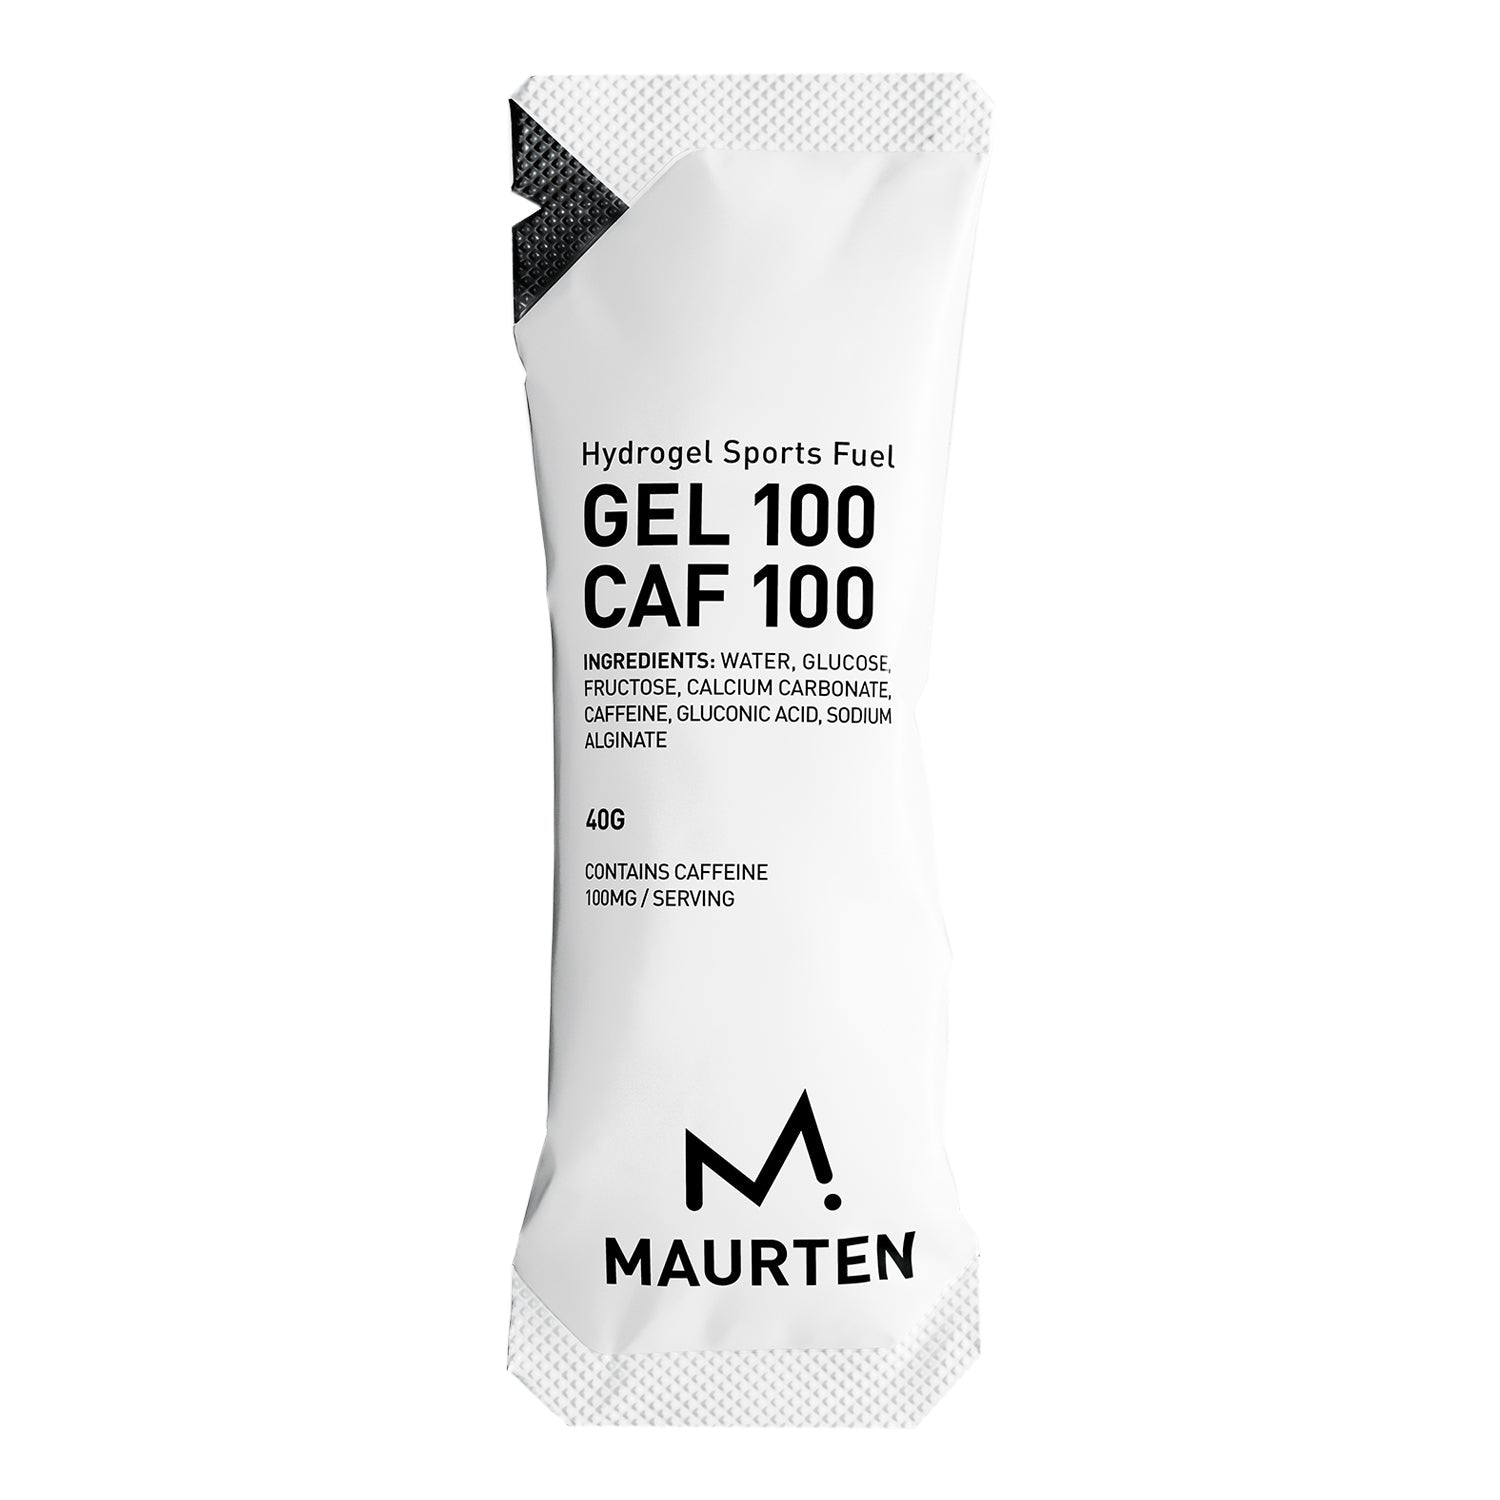 Maurten GEL 100 CAF 100 - Fuel Goods